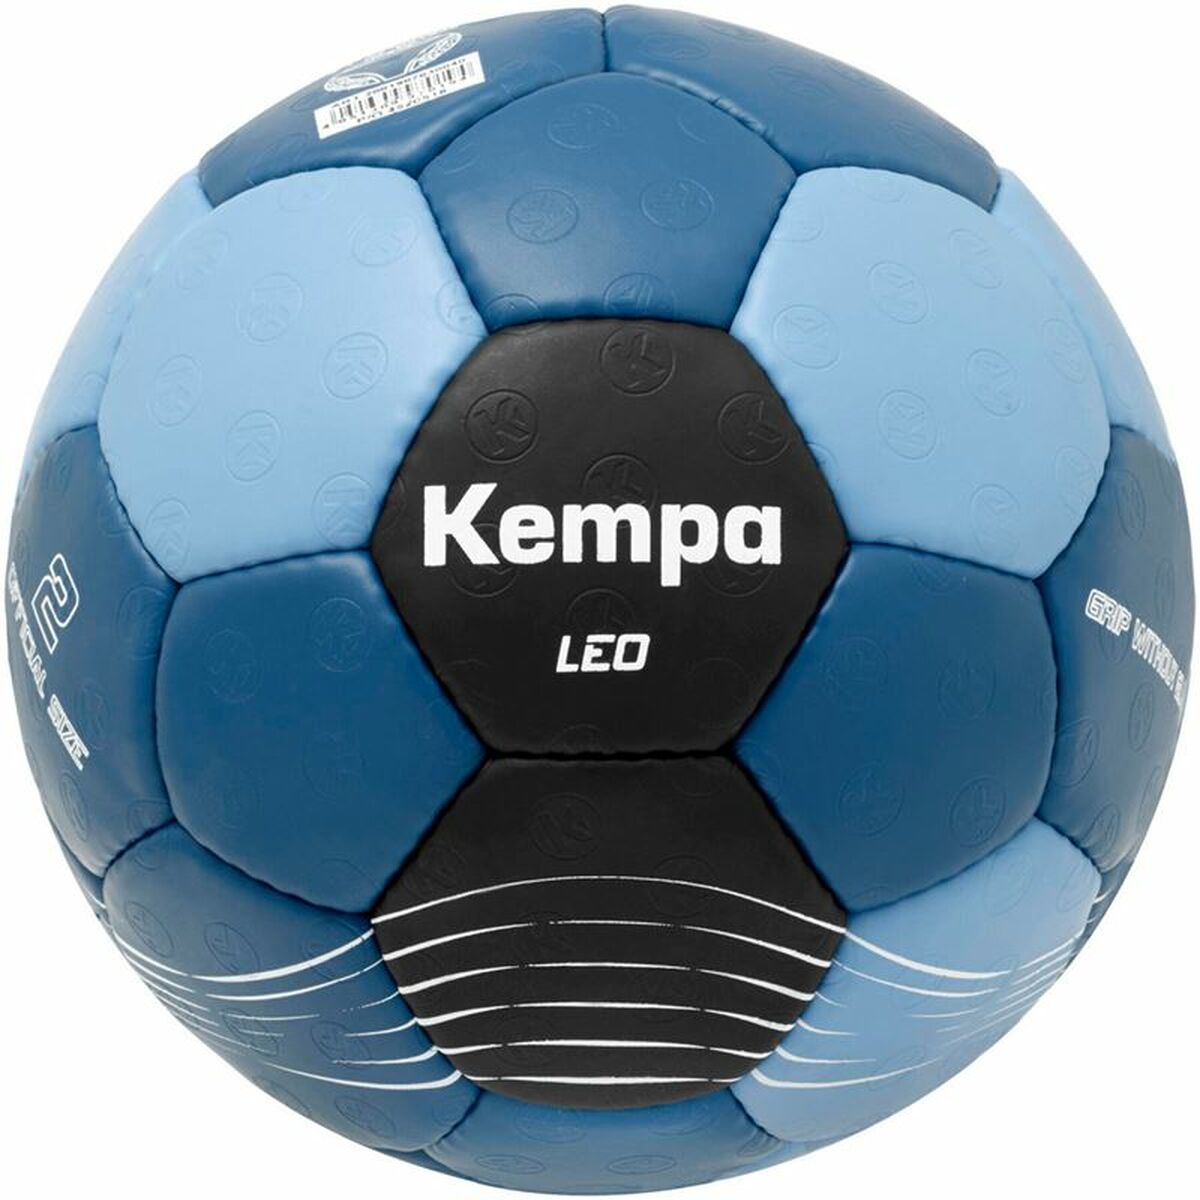 Pallone da Pallamano Kempa Leo Azzurro (Taglia 1)